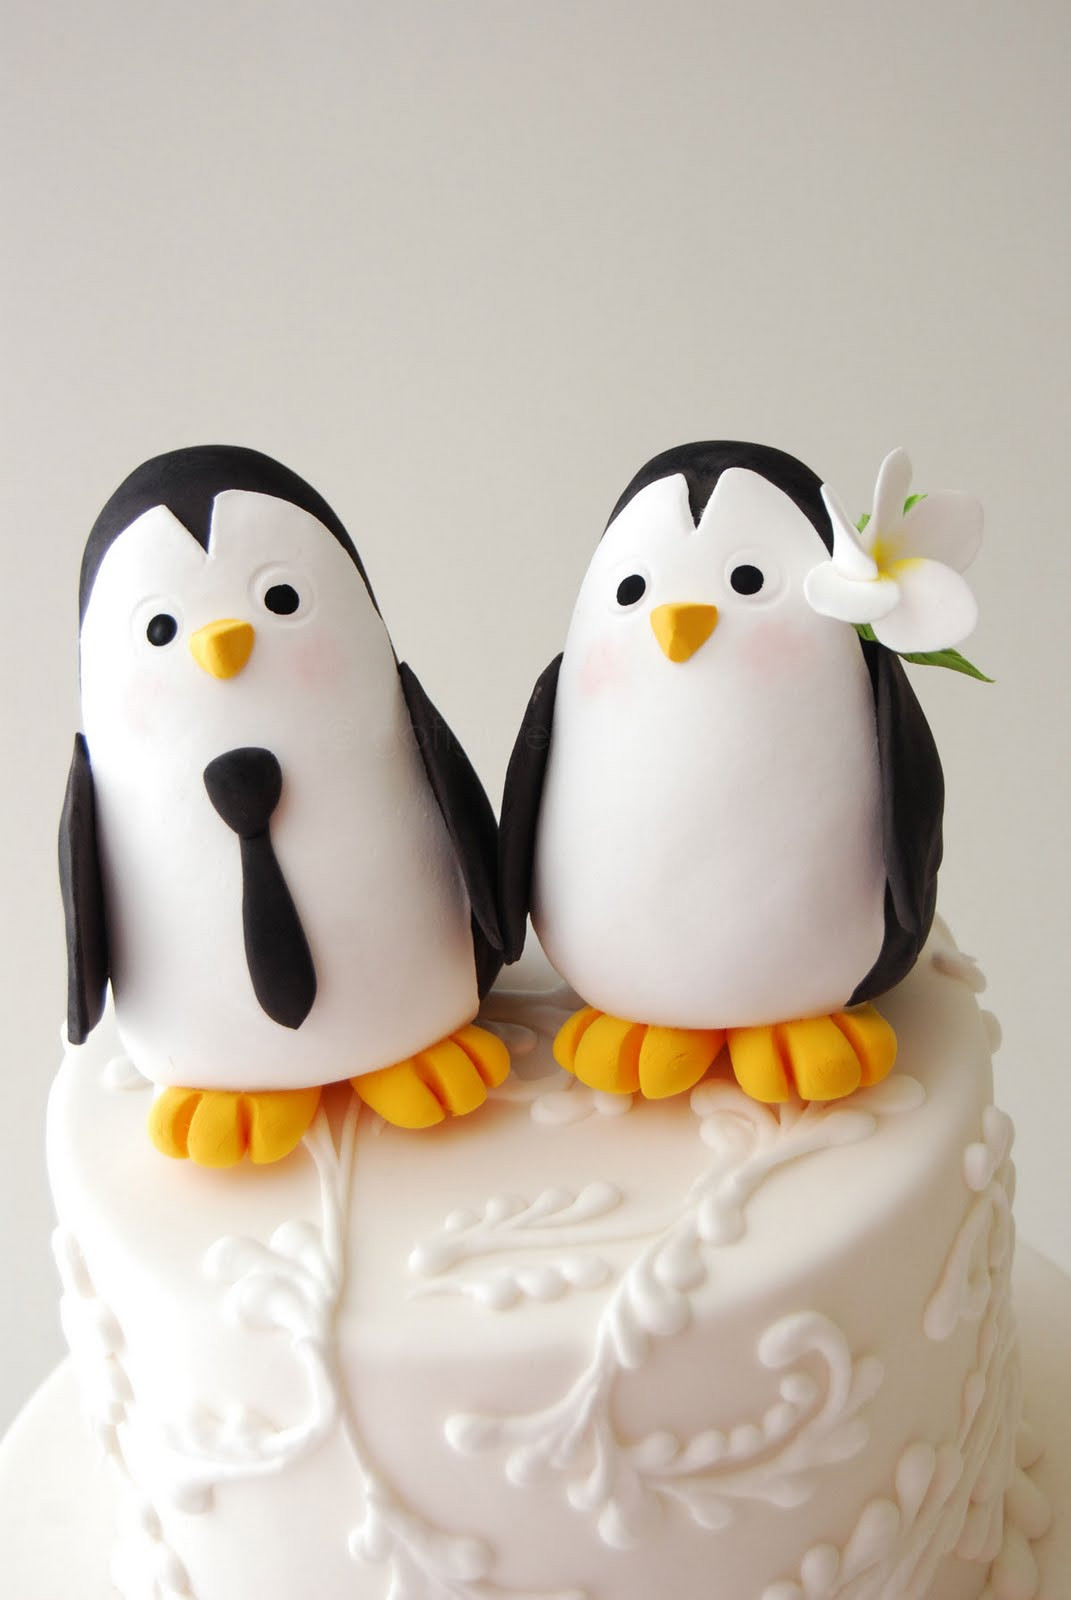 Penguin Wedding Cake Topper
 gofigurette Penguin Bride & Groom Cake Topper